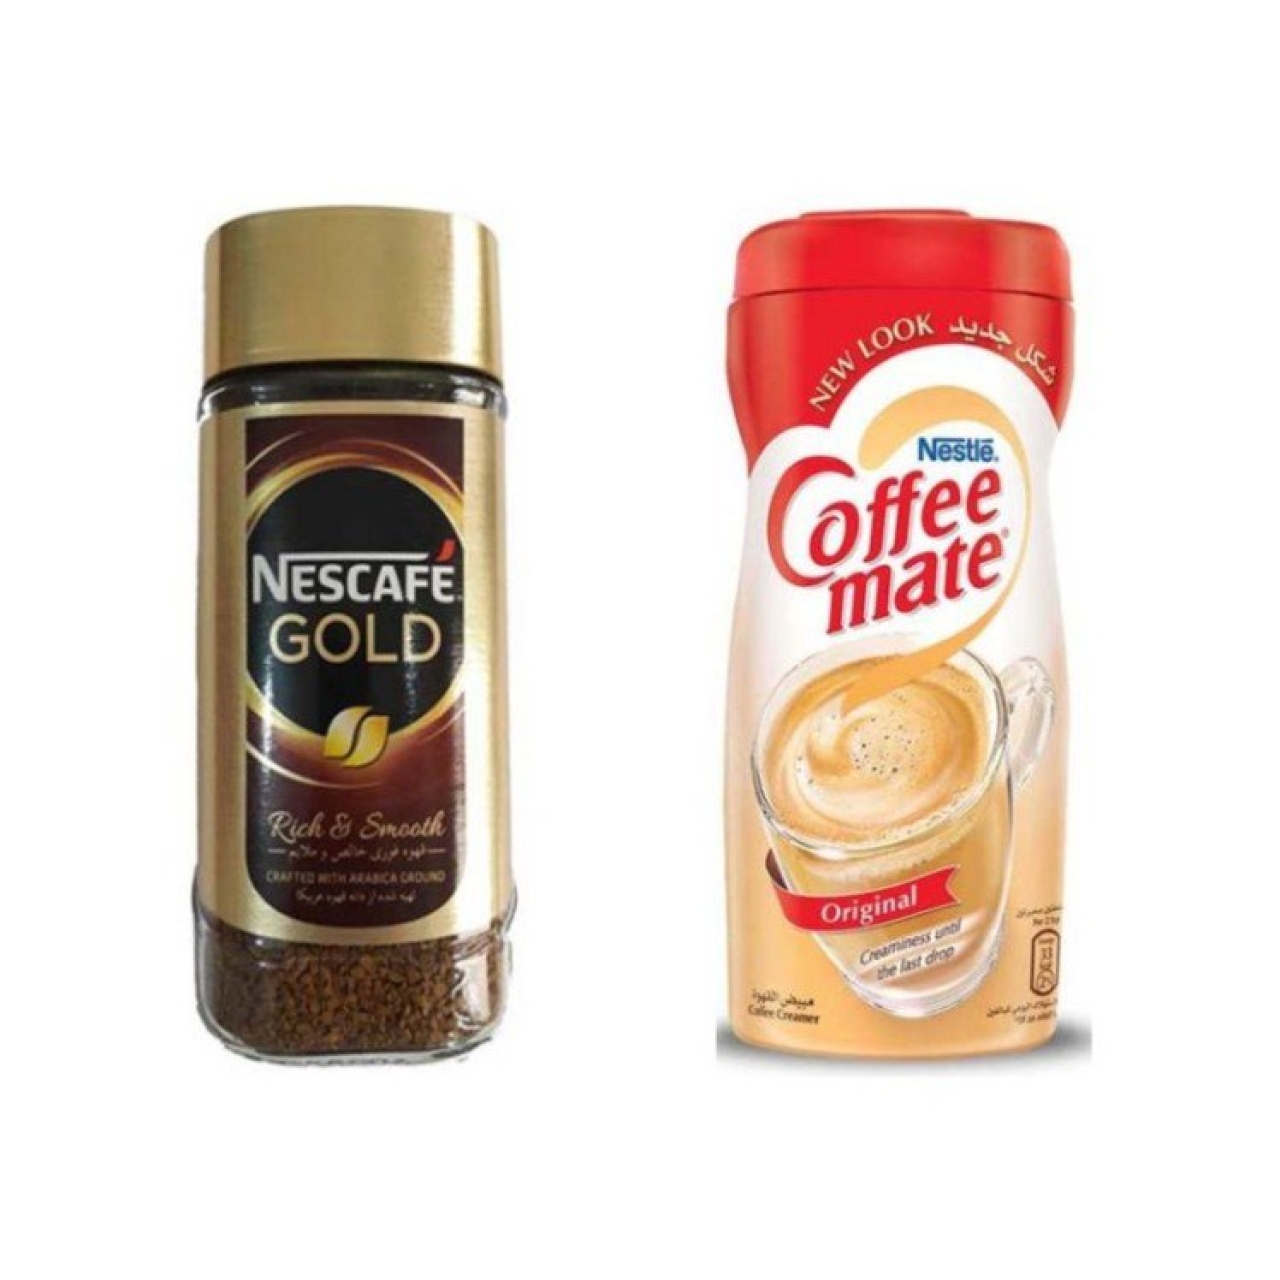 قهوه فوری نسکافه مدل GOLD مقدار 100 گرم به همراه کافی میت نستله 400 گرم